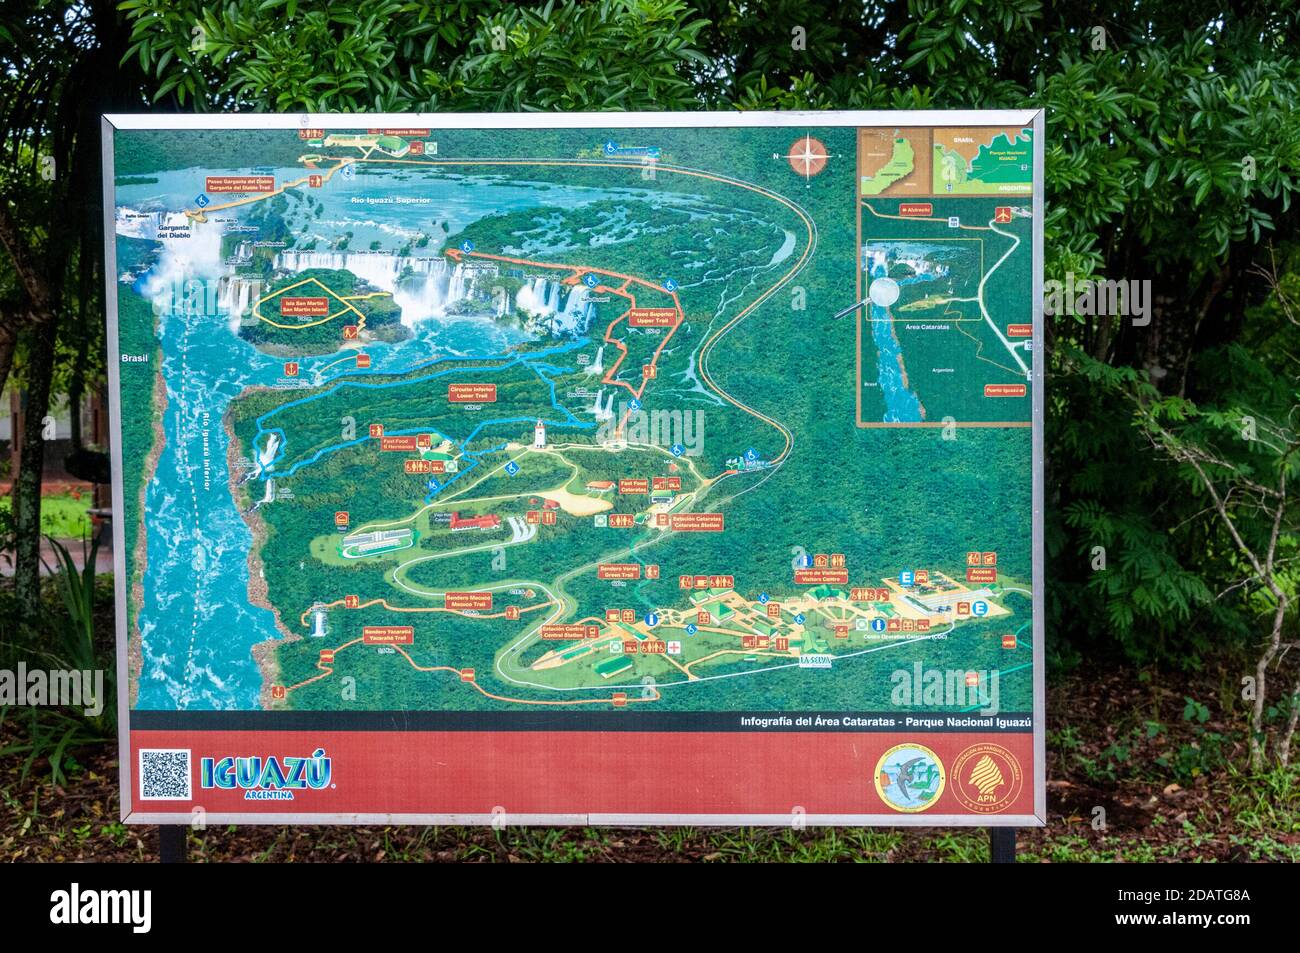 Grande mappa delle località delle cascate e dei sentieri per i piedi nel Parco Nazionale di Iguazu in Argentina. Le cascate di Iguazu sono il più grande sistema di cascate Foto Stock